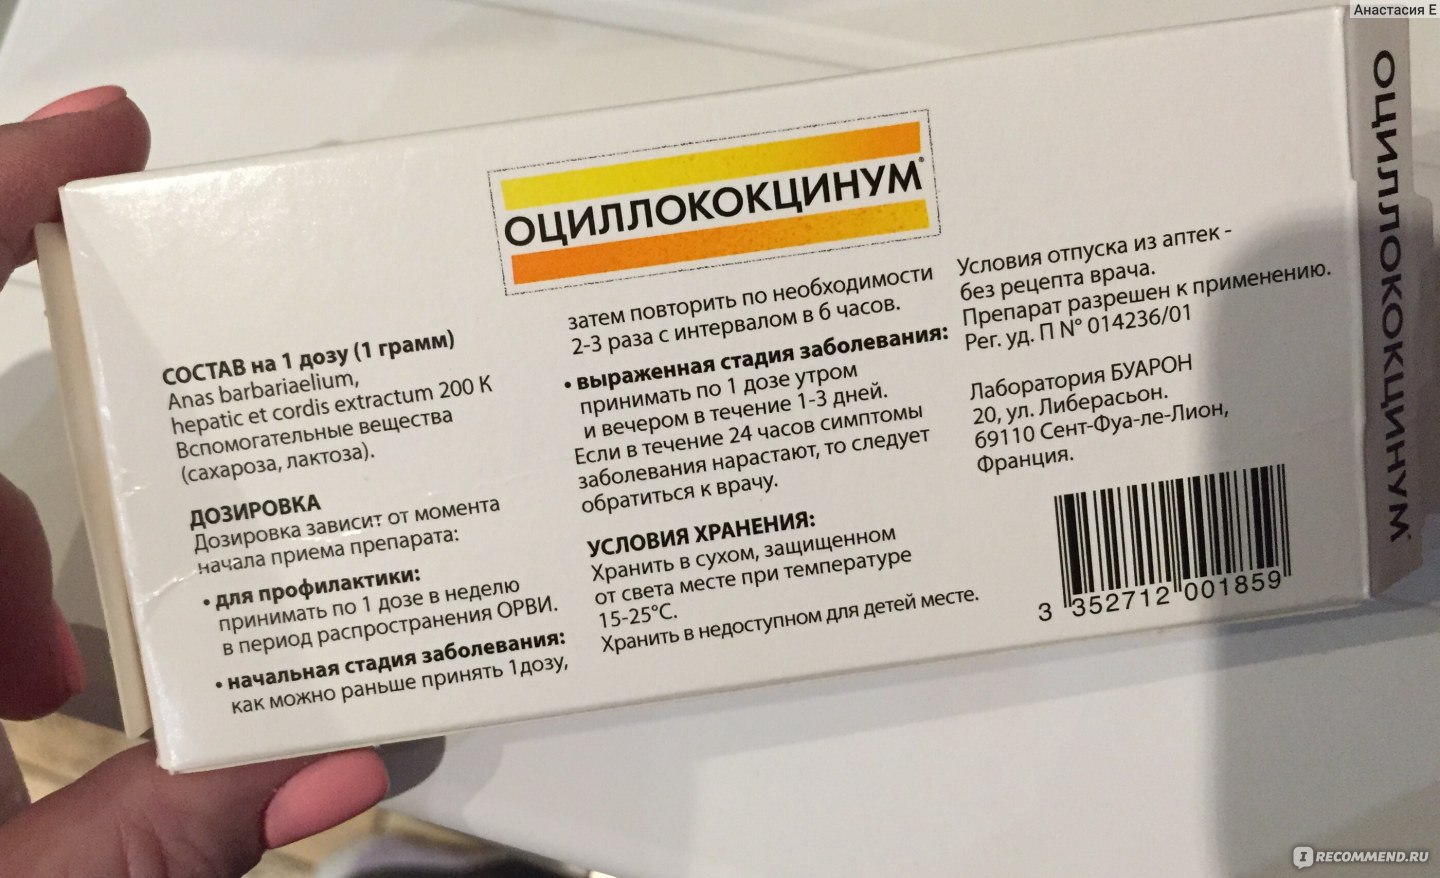 Таблетки Оциллококцинум Инструкция По Применению Цена